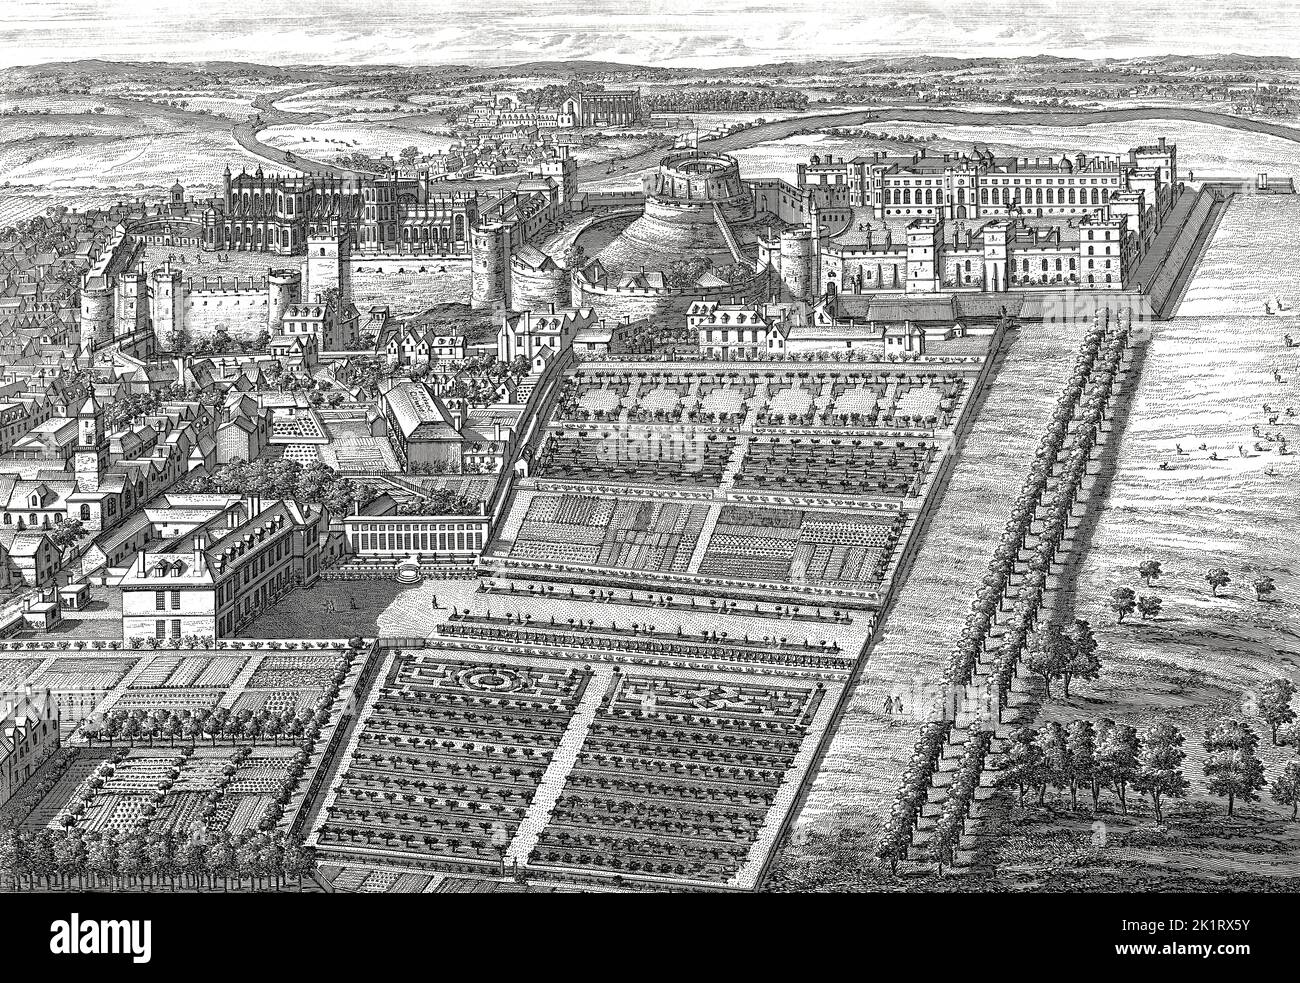 Windsor Castle, 1707, royal residence at Windsor, Berkshire, England, UK, afterJohannes Kip Stock Photo